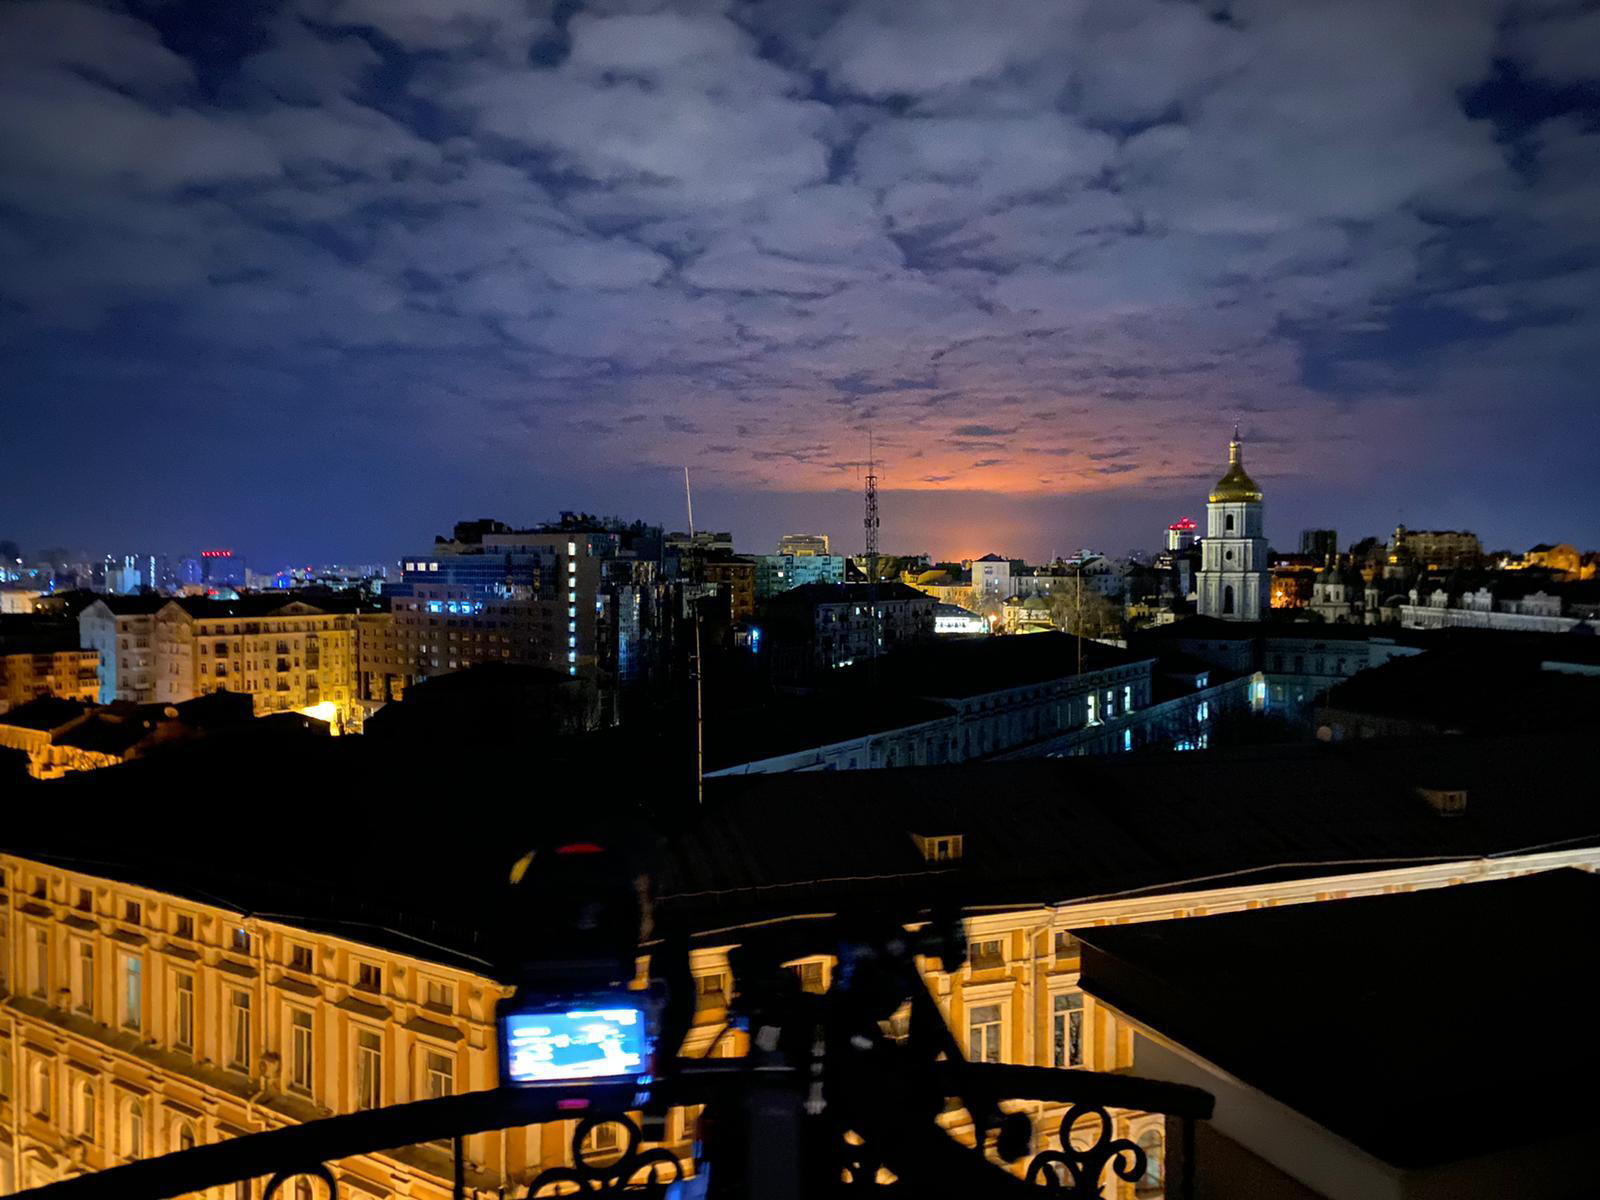 Une vaste explosion illumine le ciel nocturne de Kiev le dimanche 27 février.